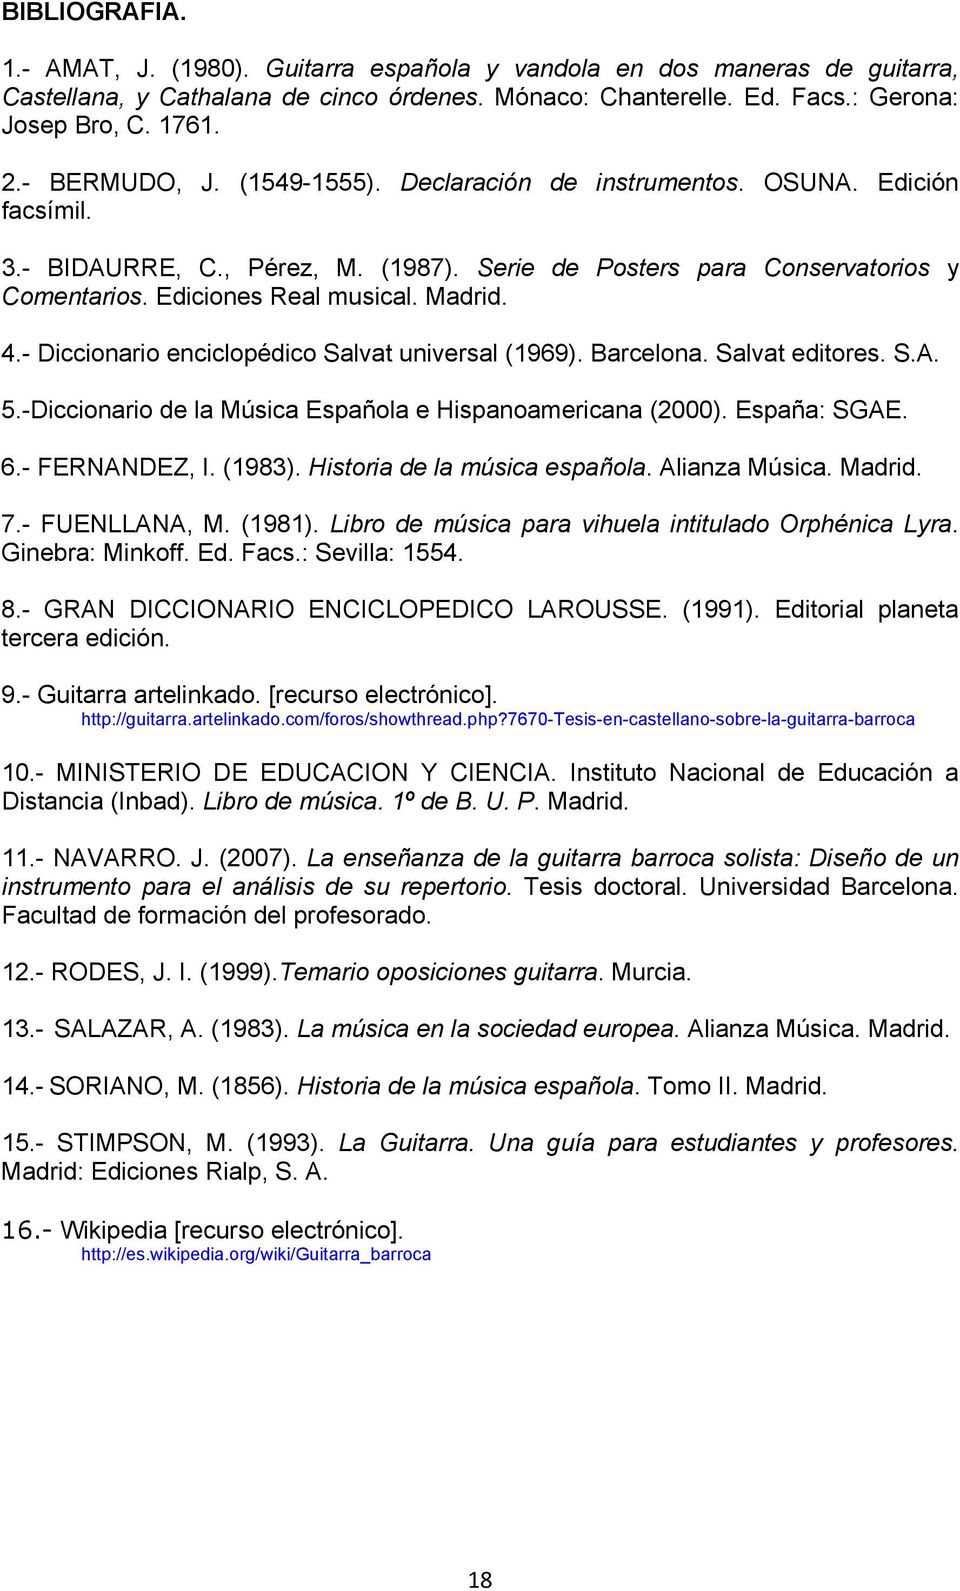 4.- Diccionario enciclopédico Salvat universal (1969). Barcelona. Salvat editores. S.A. 5.-Diccionario de la Música Española e Hispanoamericana (2000). España: SGAE. 6.- FERNANDEZ, I. (1983).